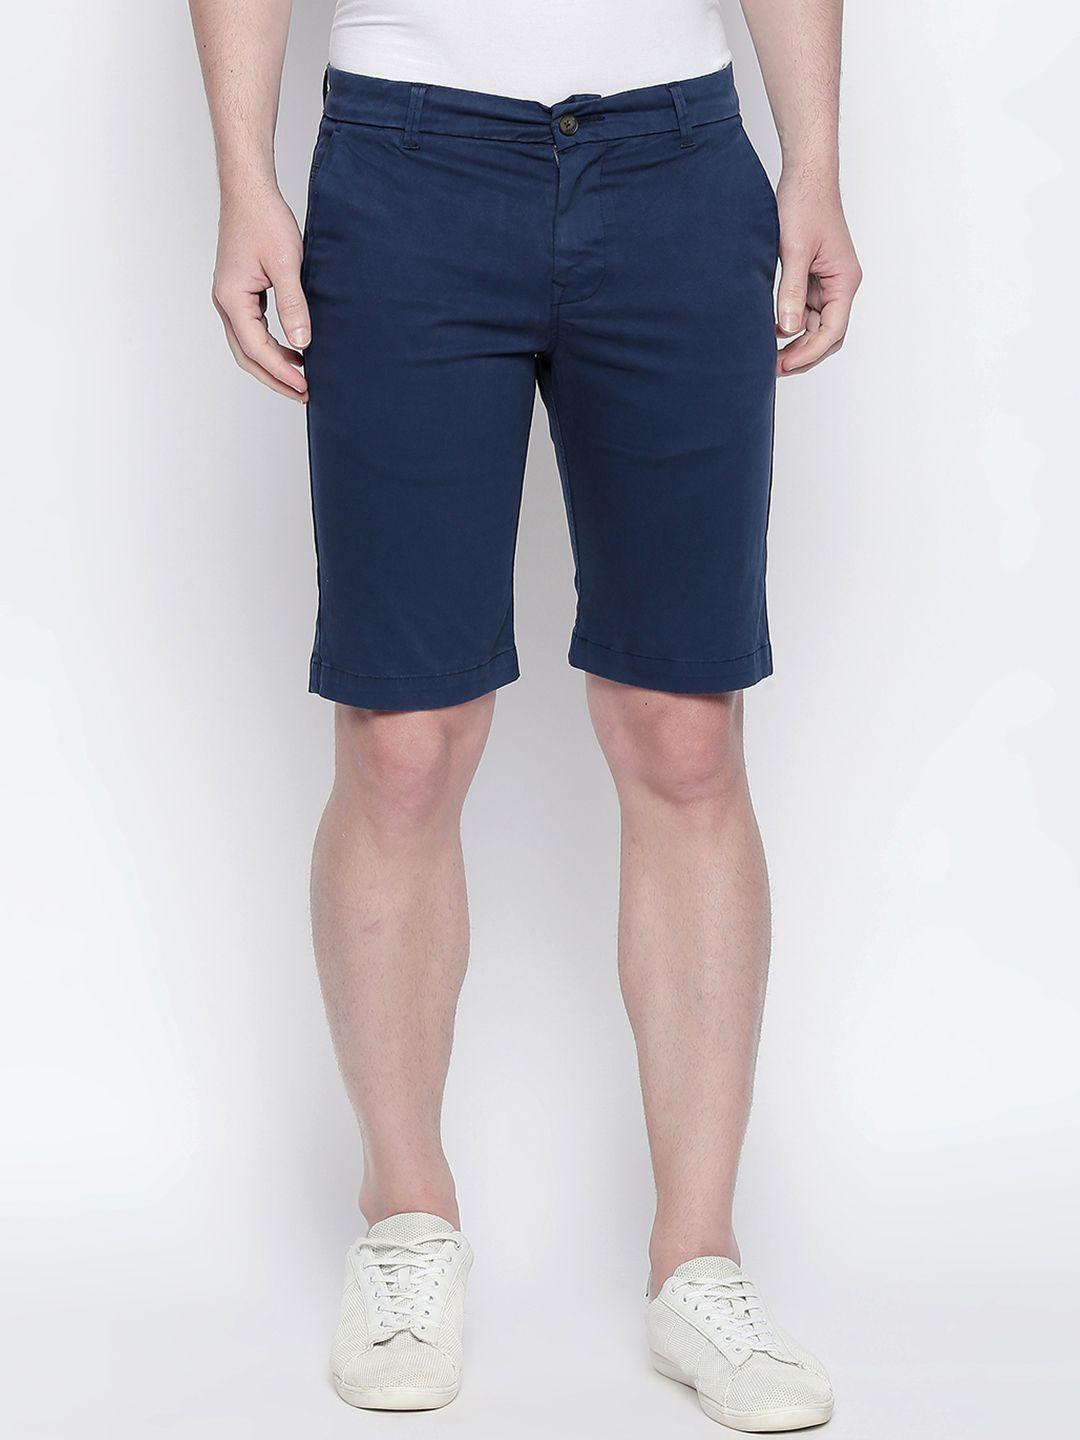 basics men navy blue solid regular fit regular shorts